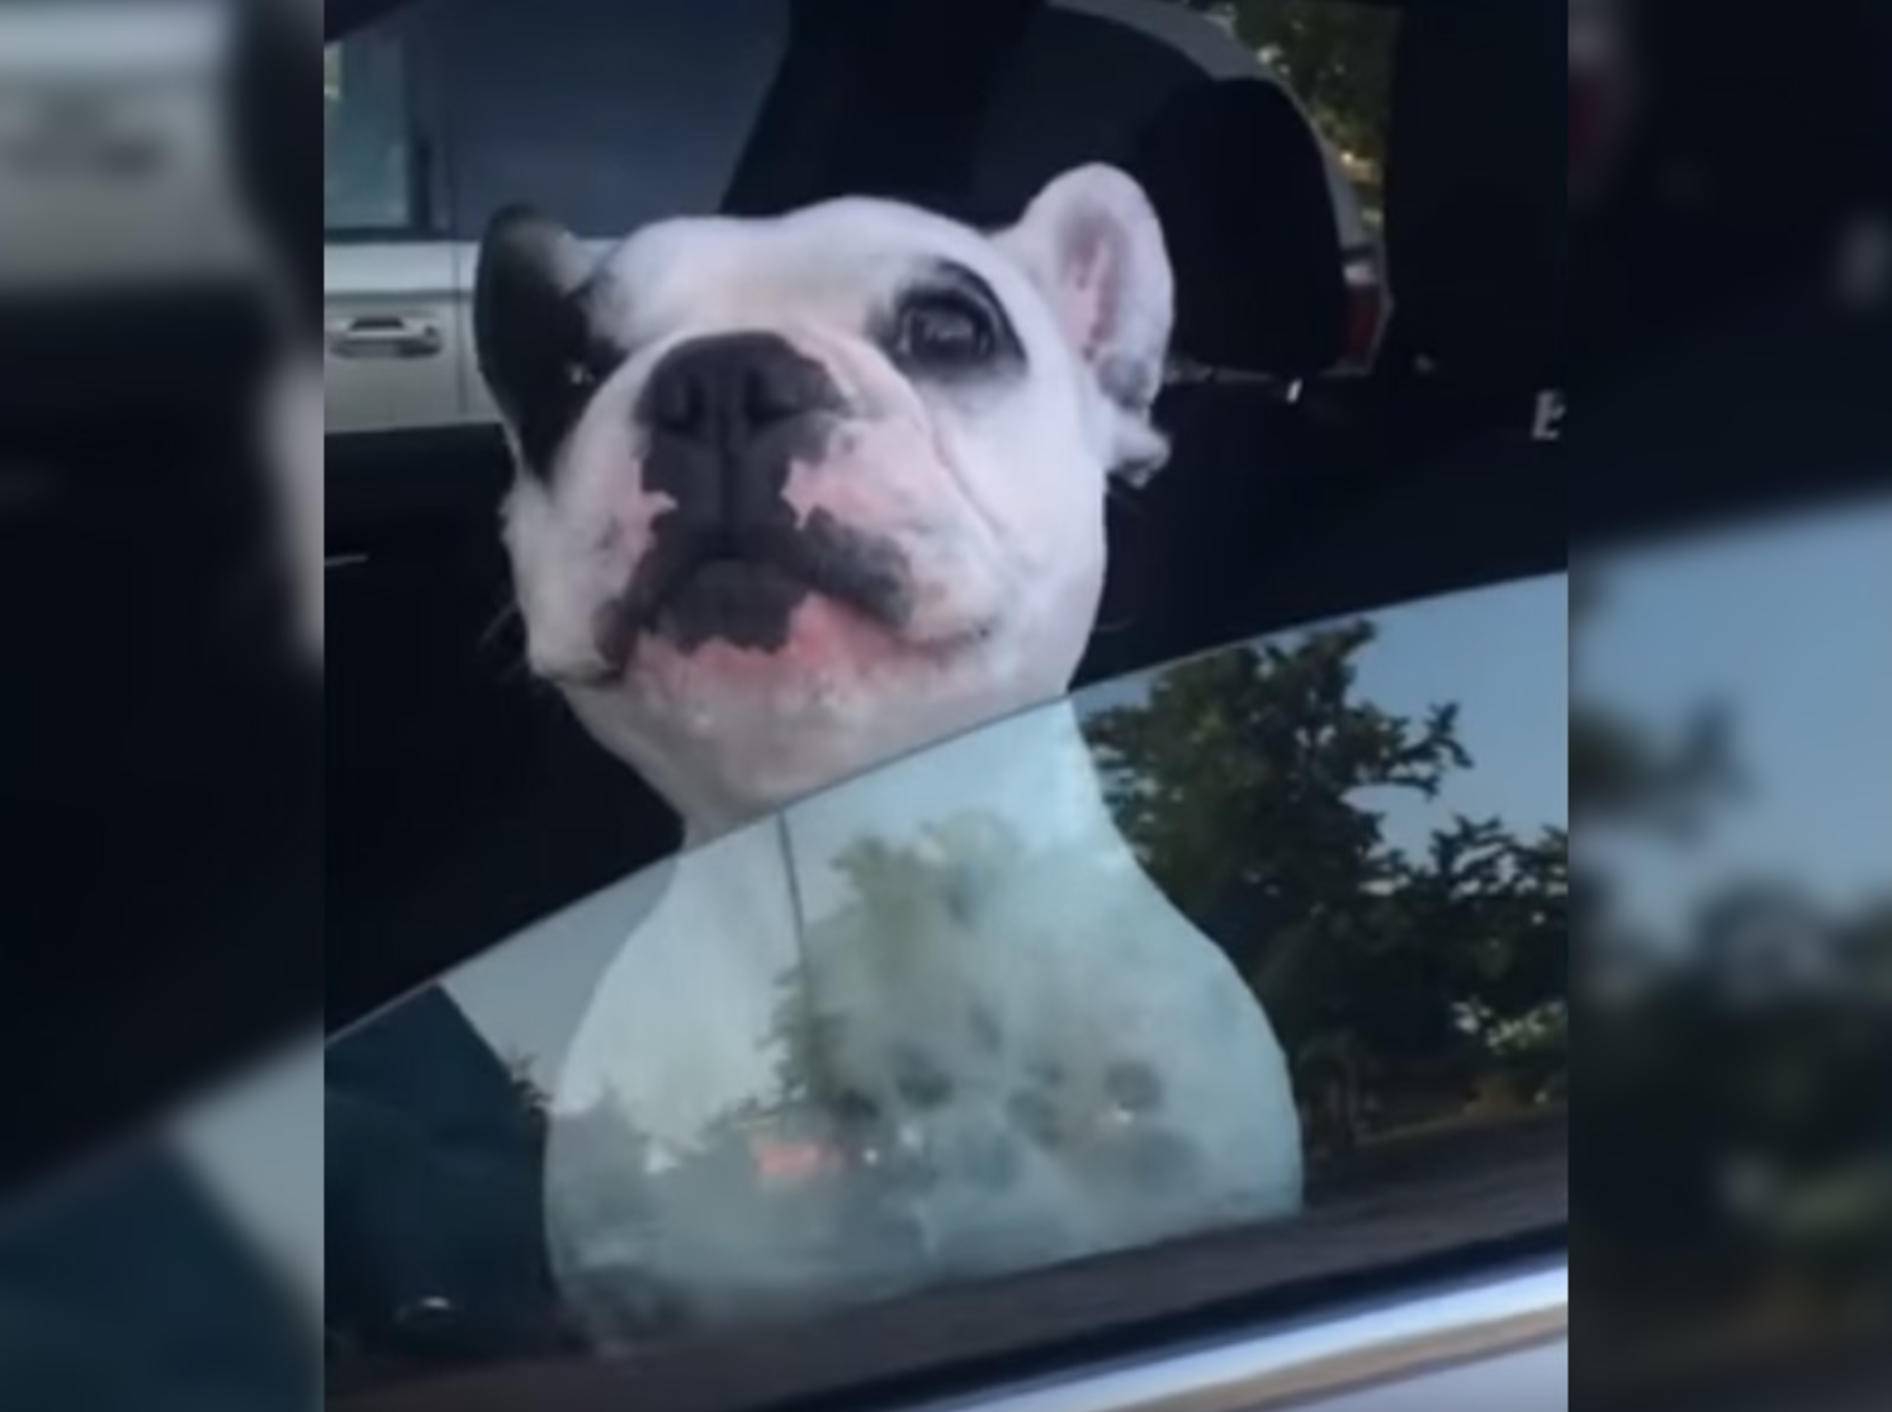 Hund Walter begeistert mit seinem Gesang das Netz - Bild: YouTube / Strange incident